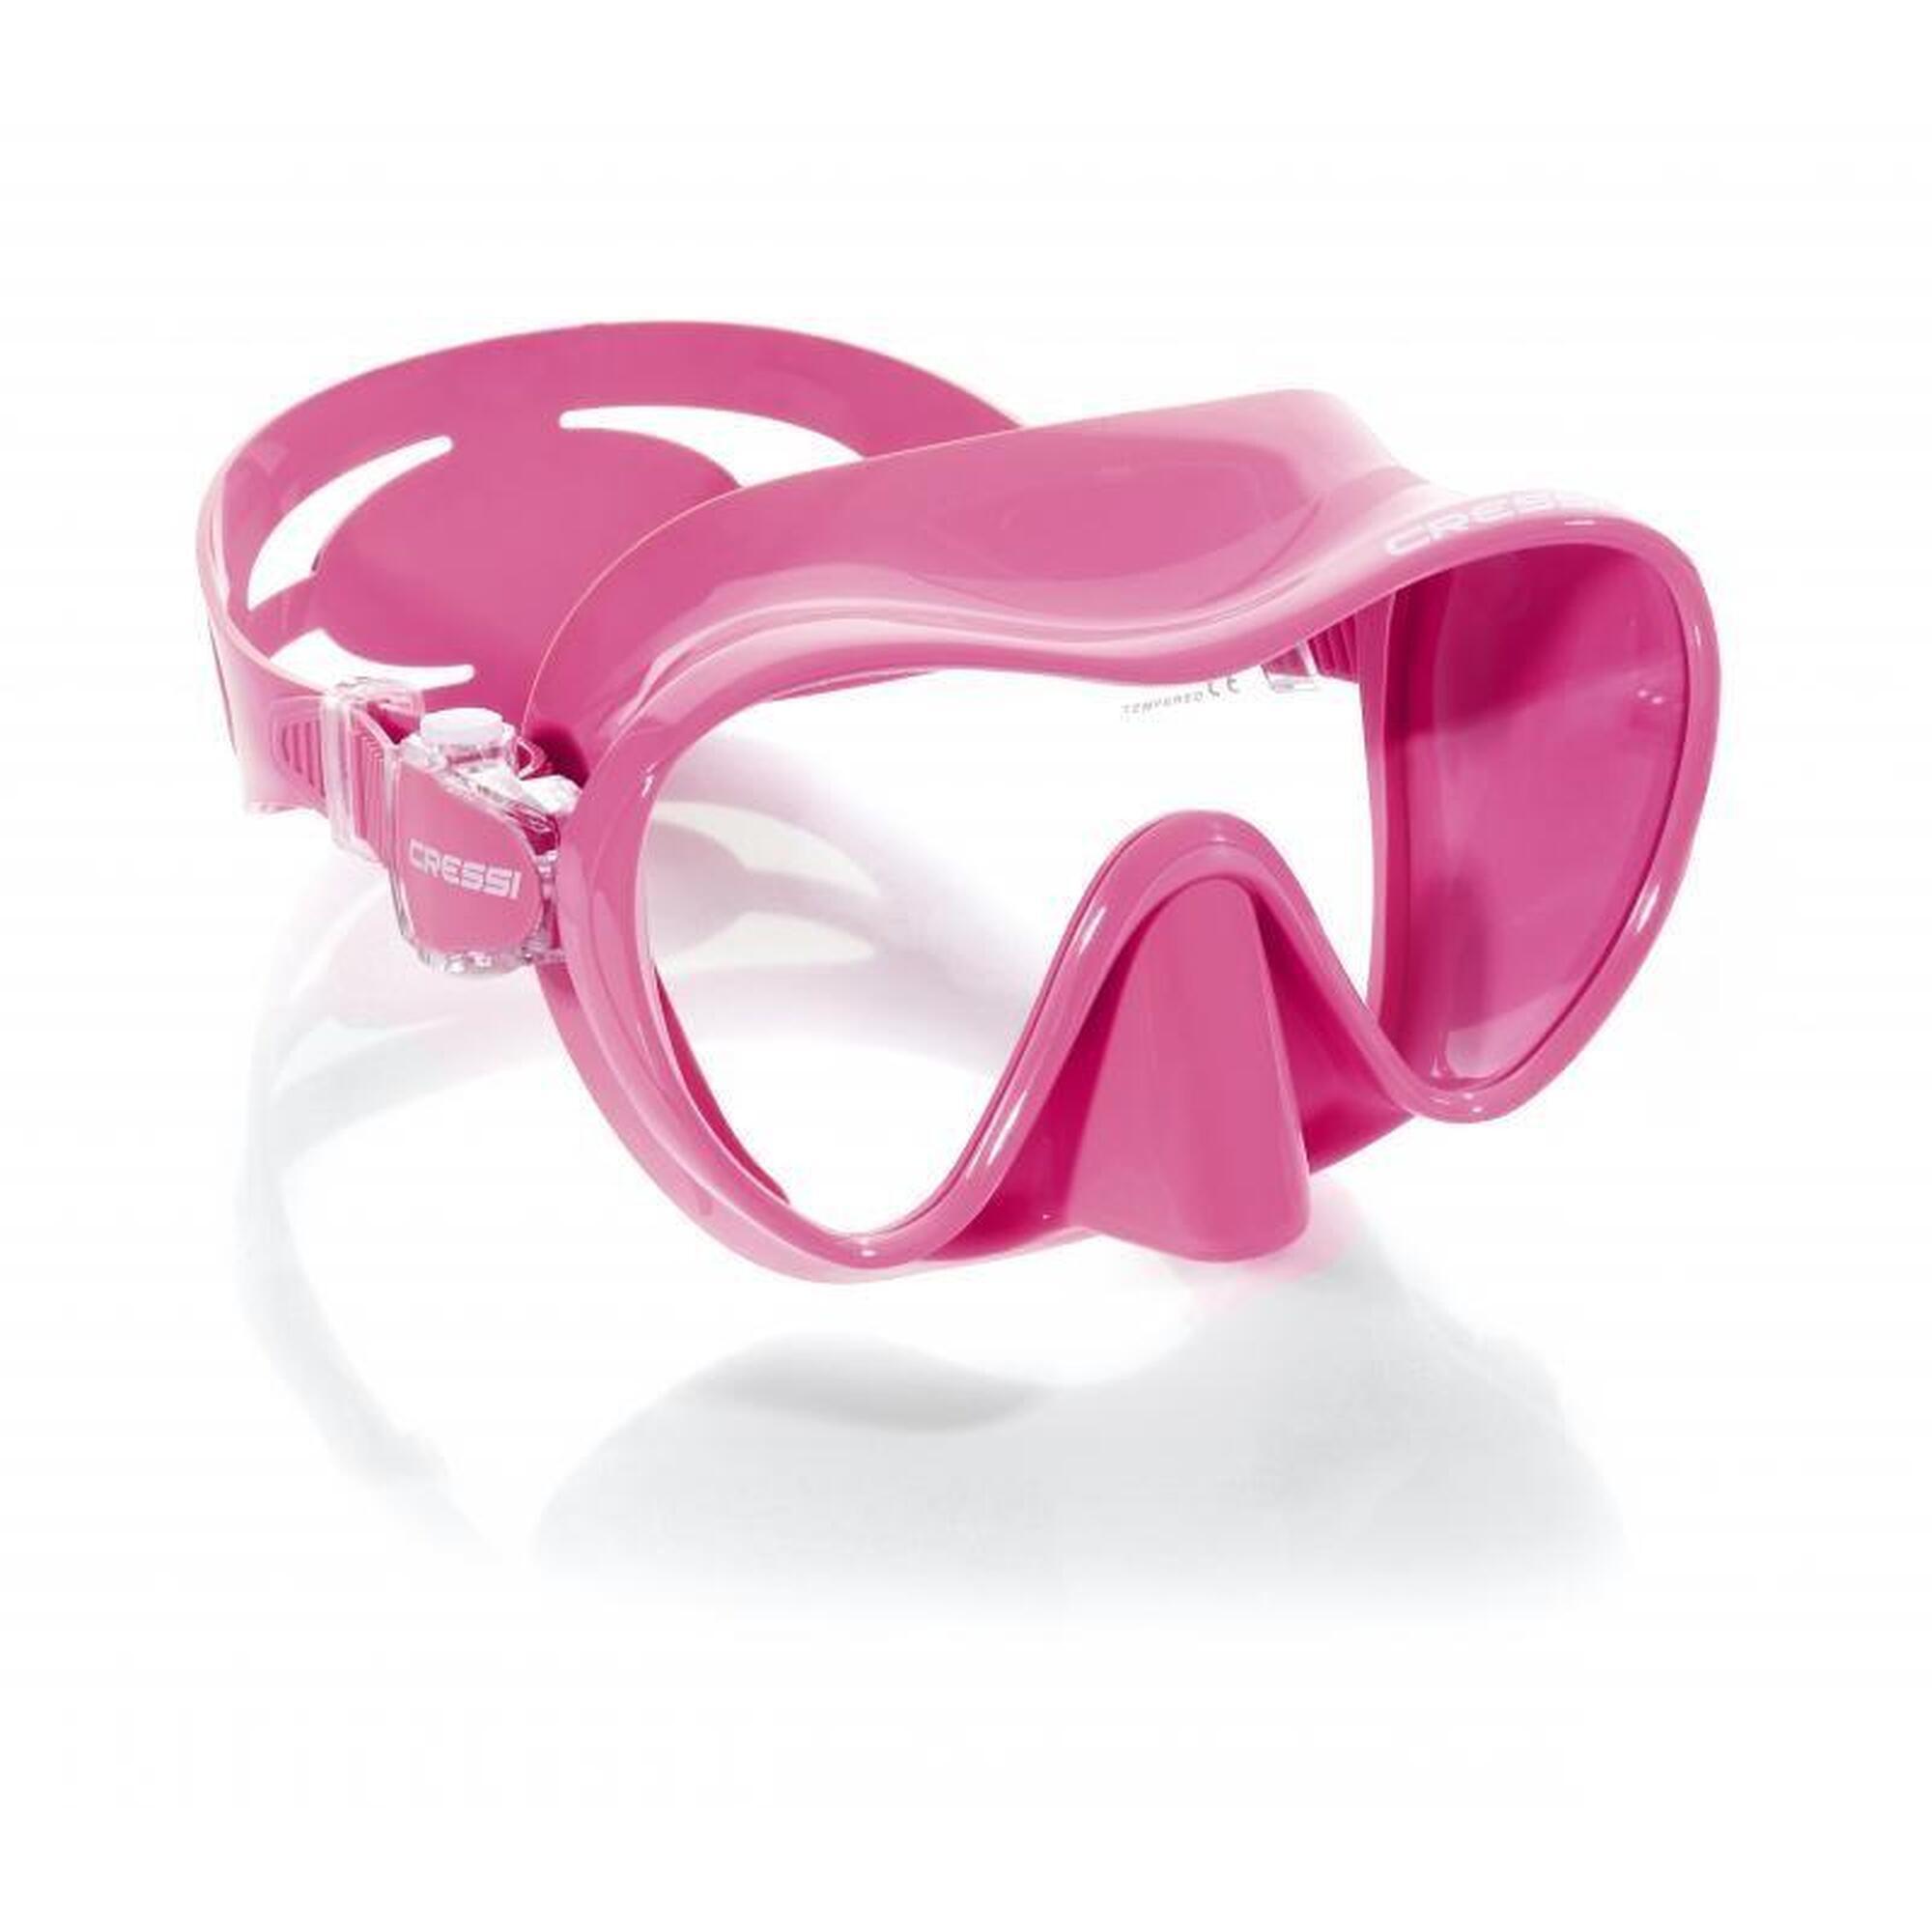 F1 小號潛水面鏡 - 粉色